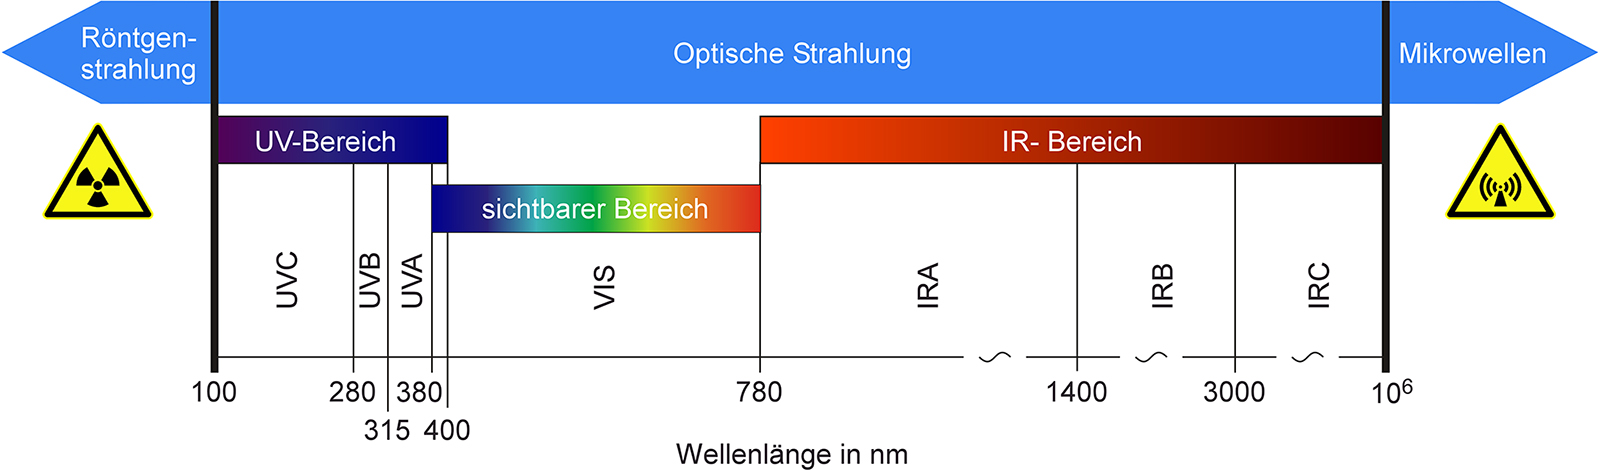 Abbildung 6.4-1 Wellenlängenbereich optischer Strahlung mit Unterteilung in verschiedene Spektralbereiche